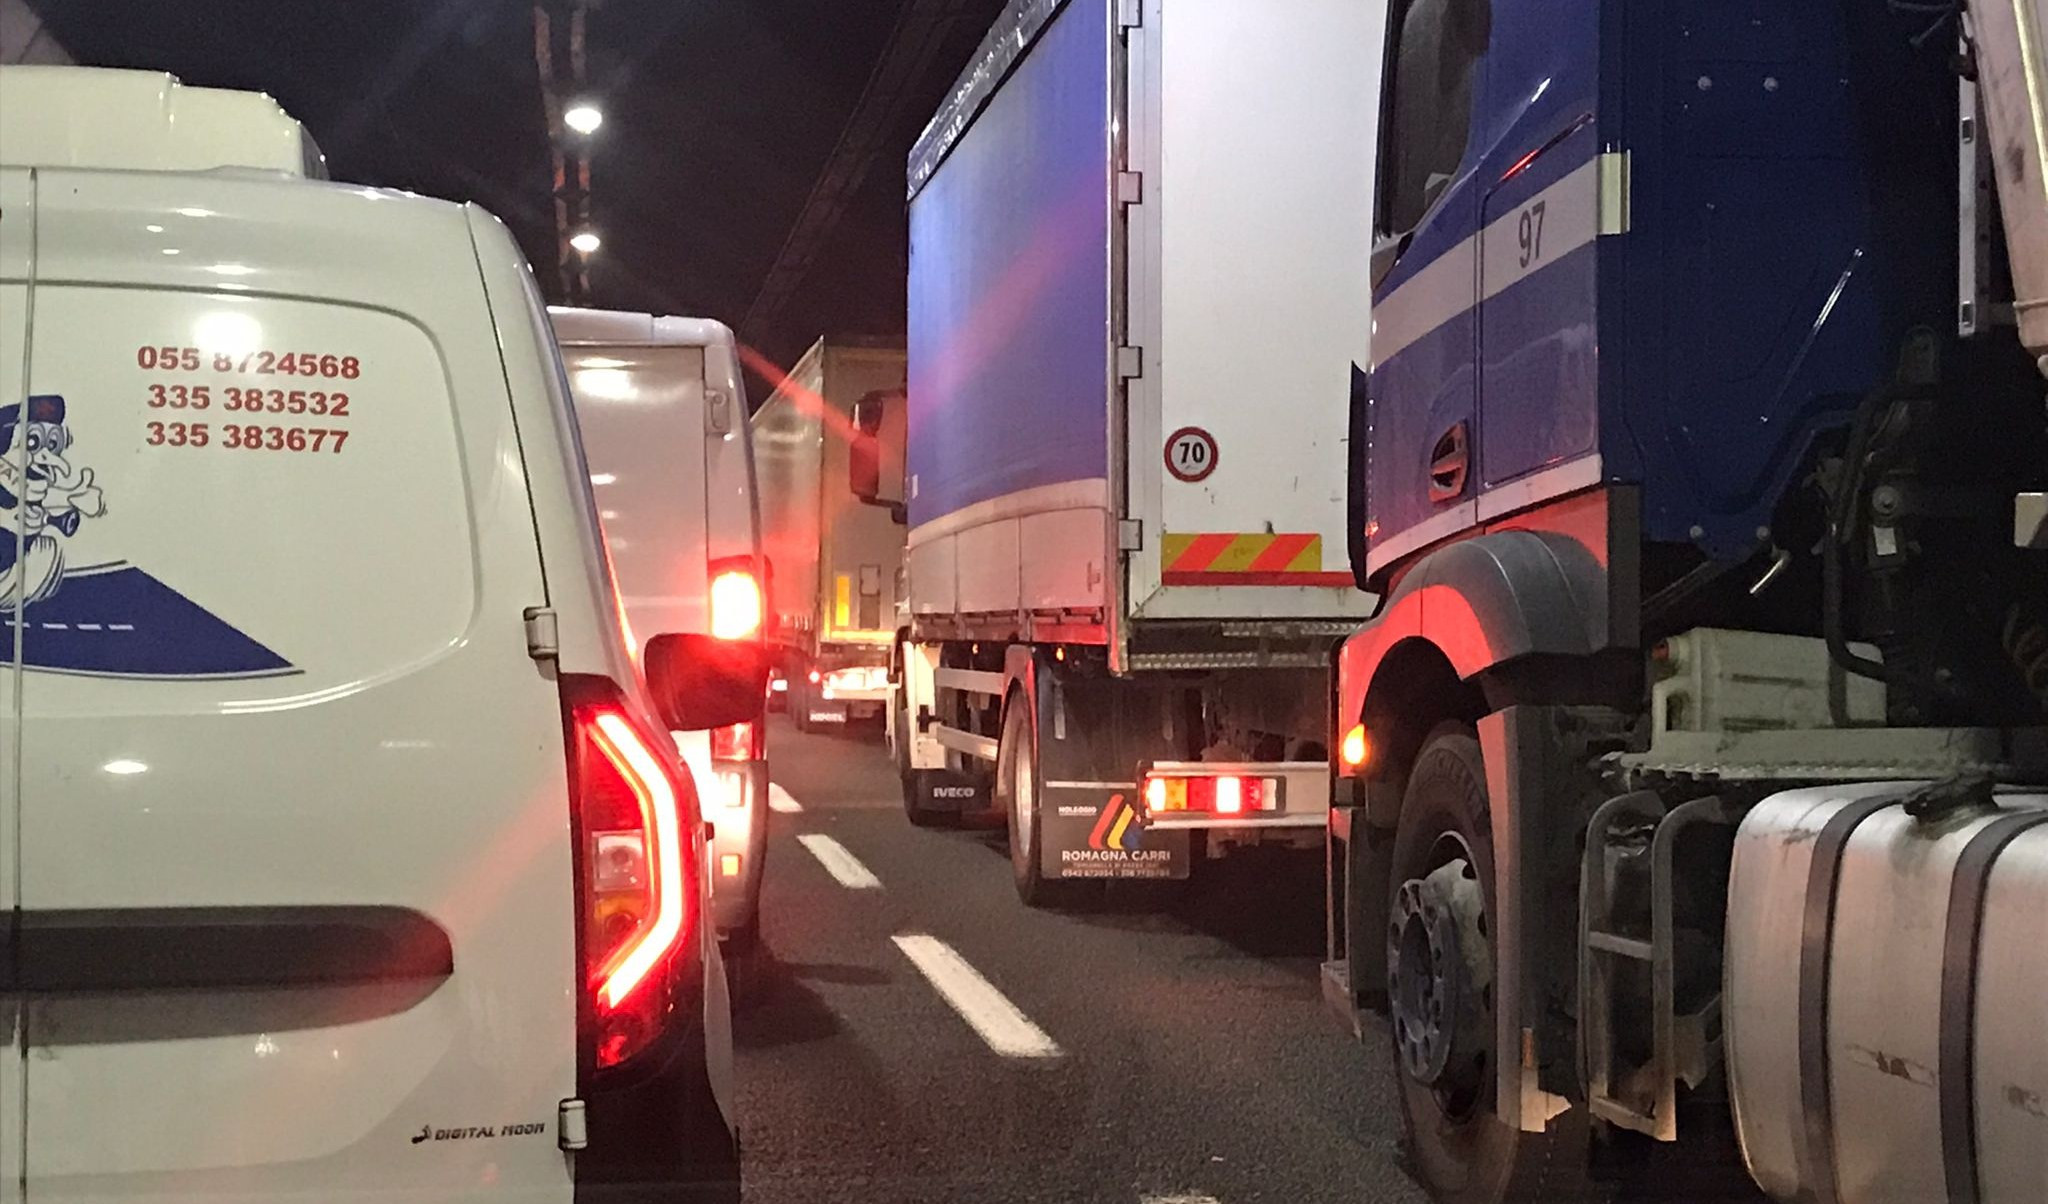 Caos autostrade, veicolo in fiamme in A12: traffico bloccato e poi riaperto tra Chiavari e Rapallo